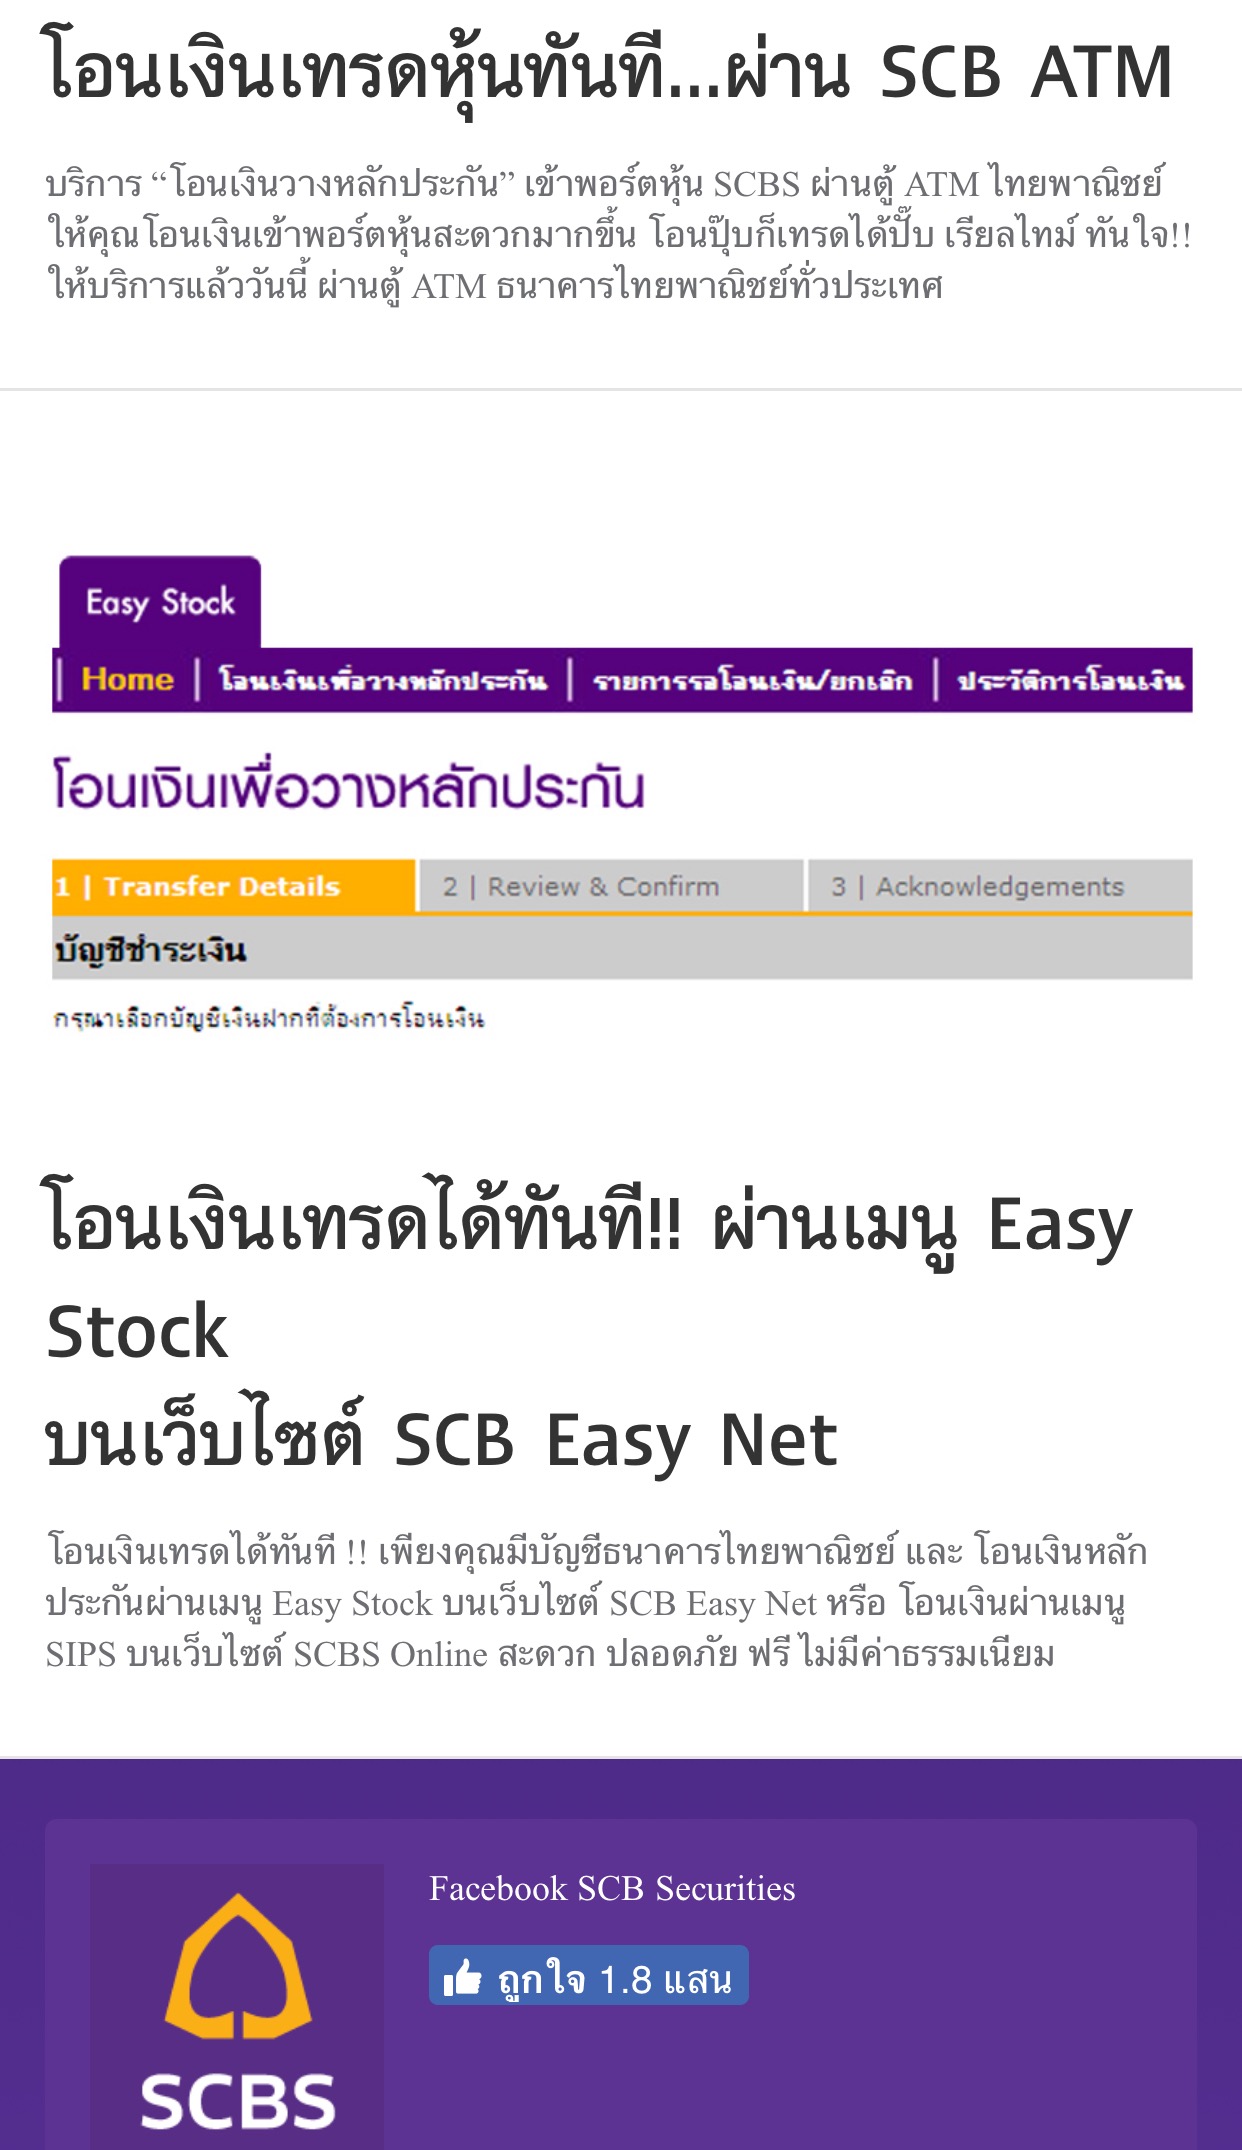 ค่าธรรมเนียมโอนเงินธนาคารไทยพาณิชย์: ต้องรู้จักกับค่าธรรมเนียมที่ธนาคารมีให้บริการ  - Kcn Việt Phát